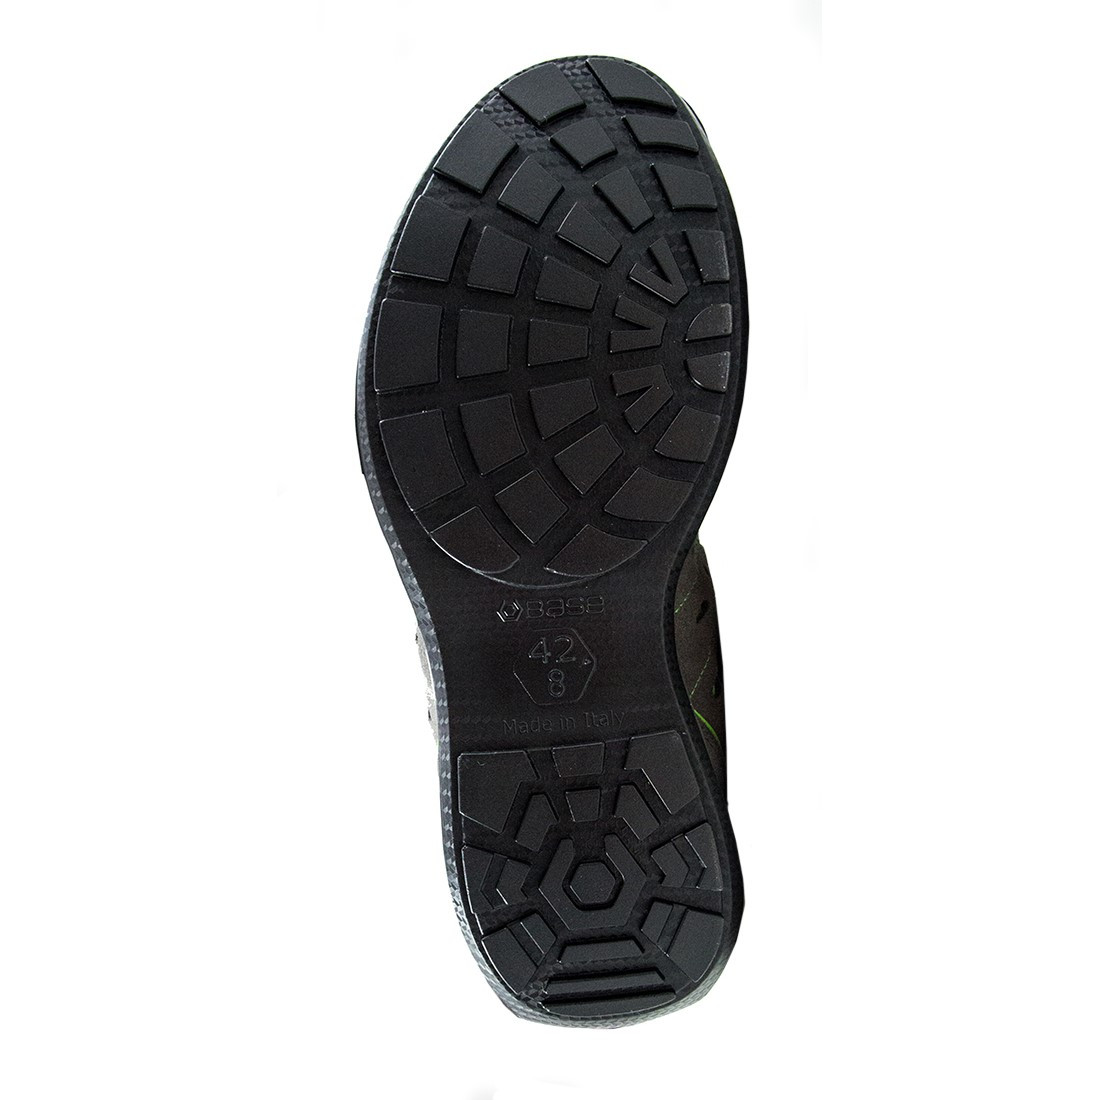 Pantofi Scuba S1P SRC - Incaltaminte de protectie | Bocanci, Pantofi, Sandale, Cizme